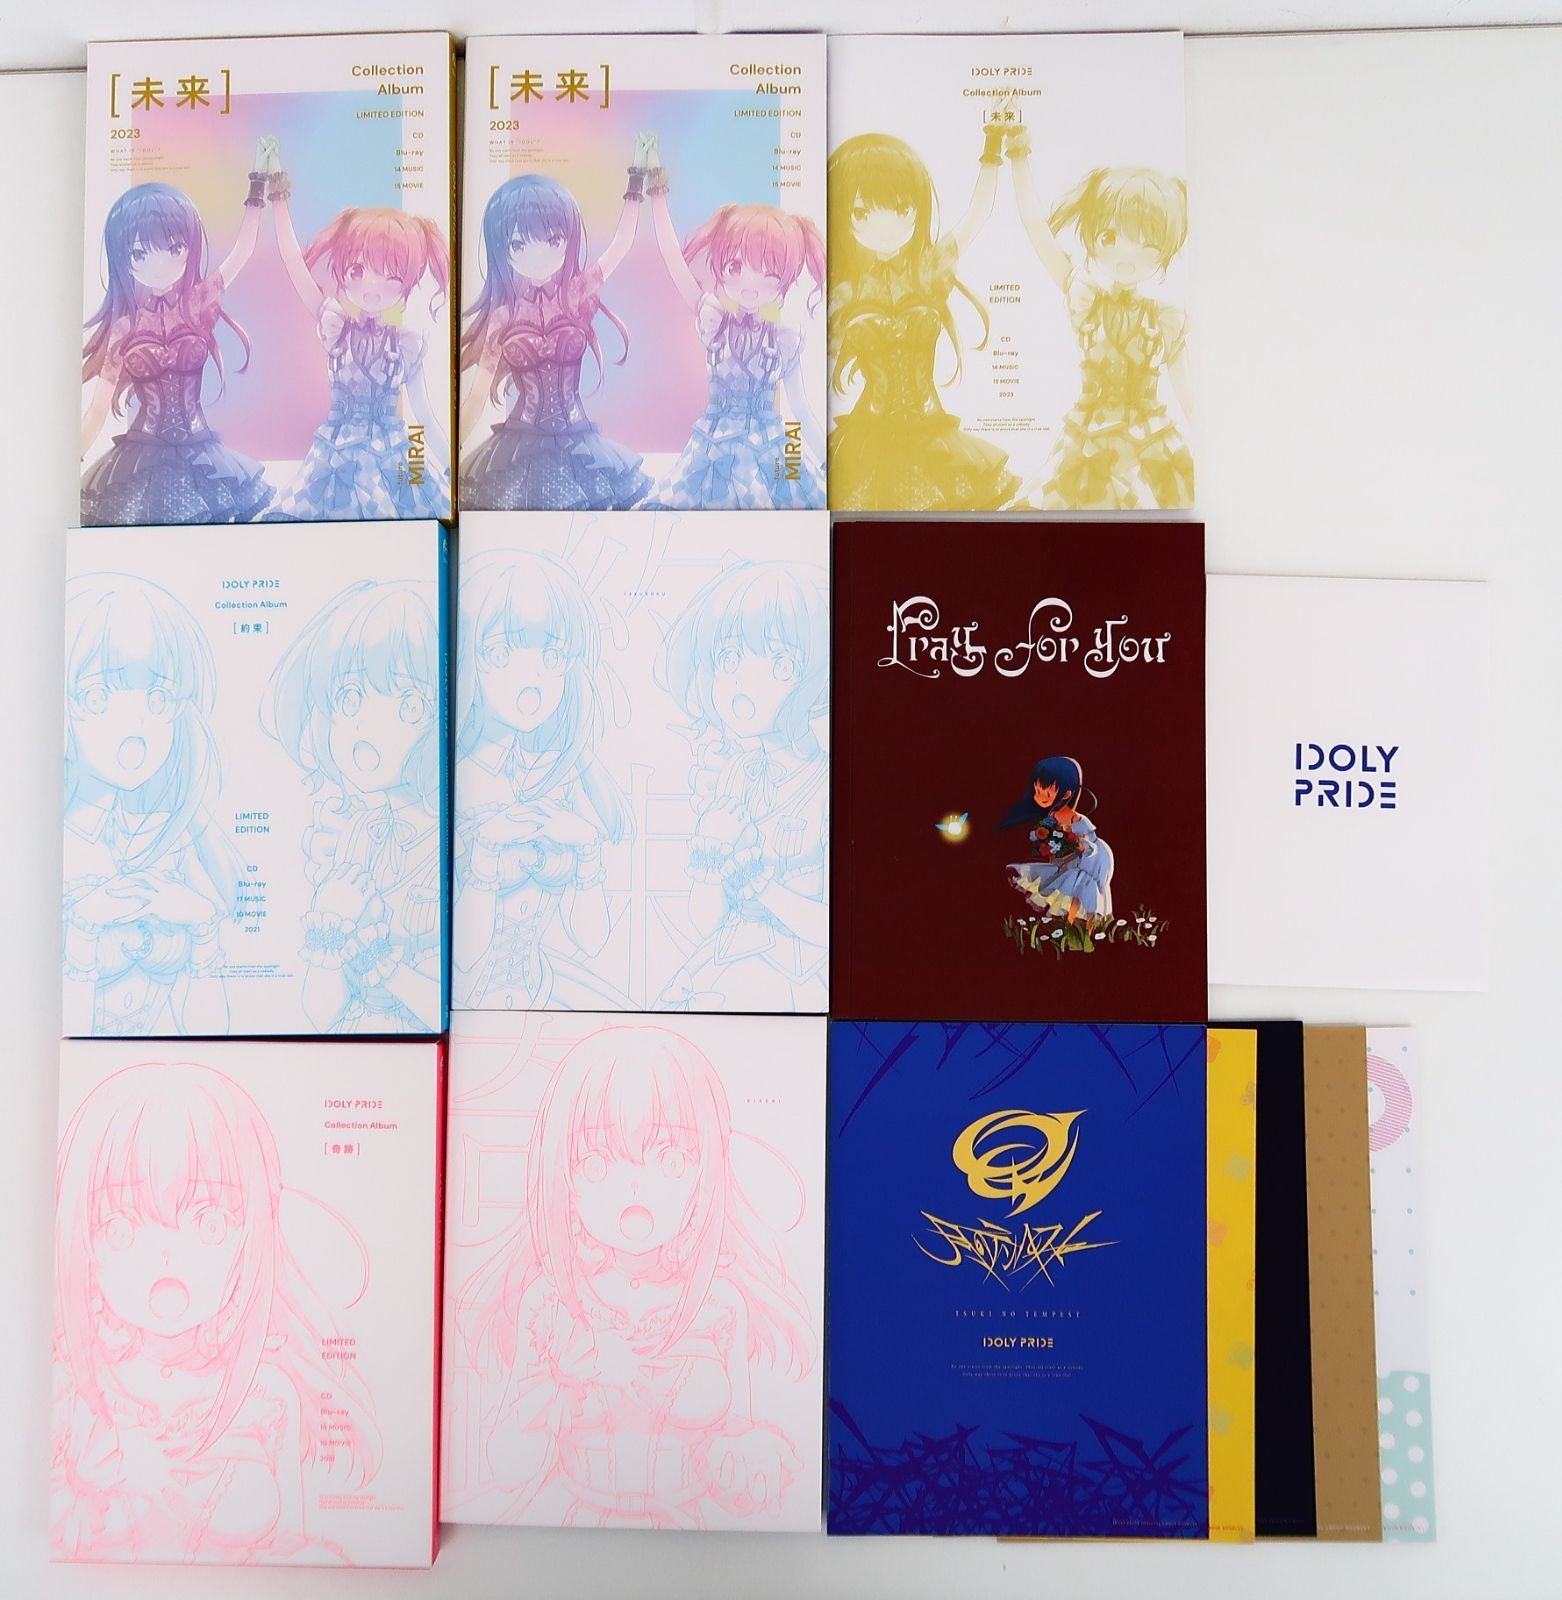 3点セット IDOLY PRIDE Collection Album 奇跡/約束/未来 CD 初回限定 